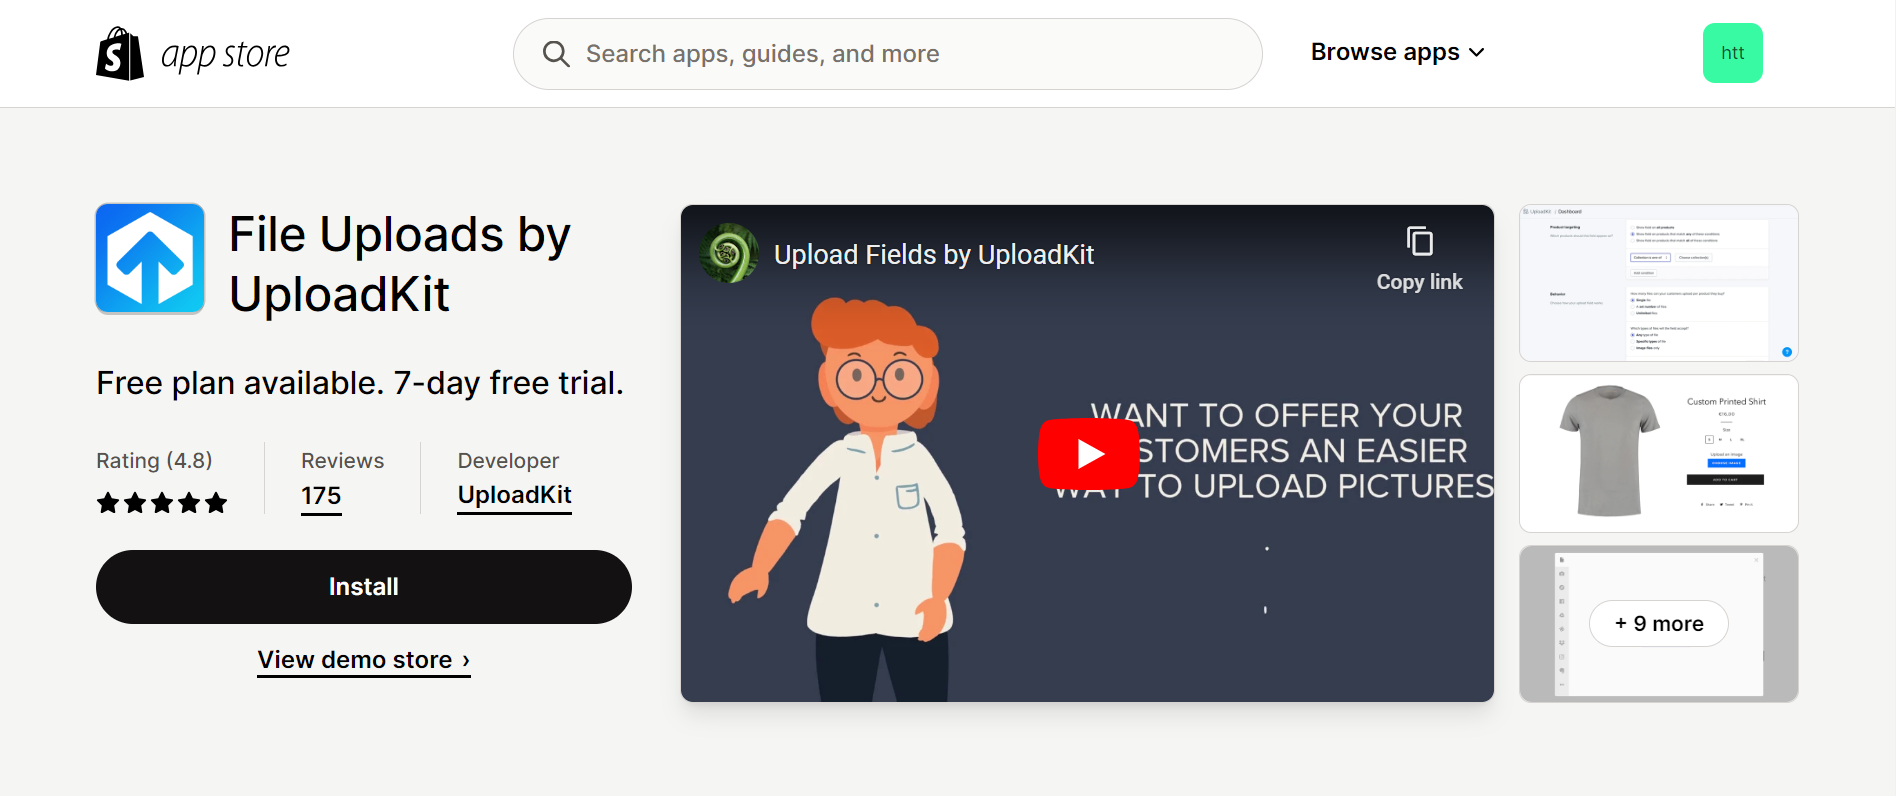 Upload-Lift Image Upload - Receive file uploads in Shopify, shapes